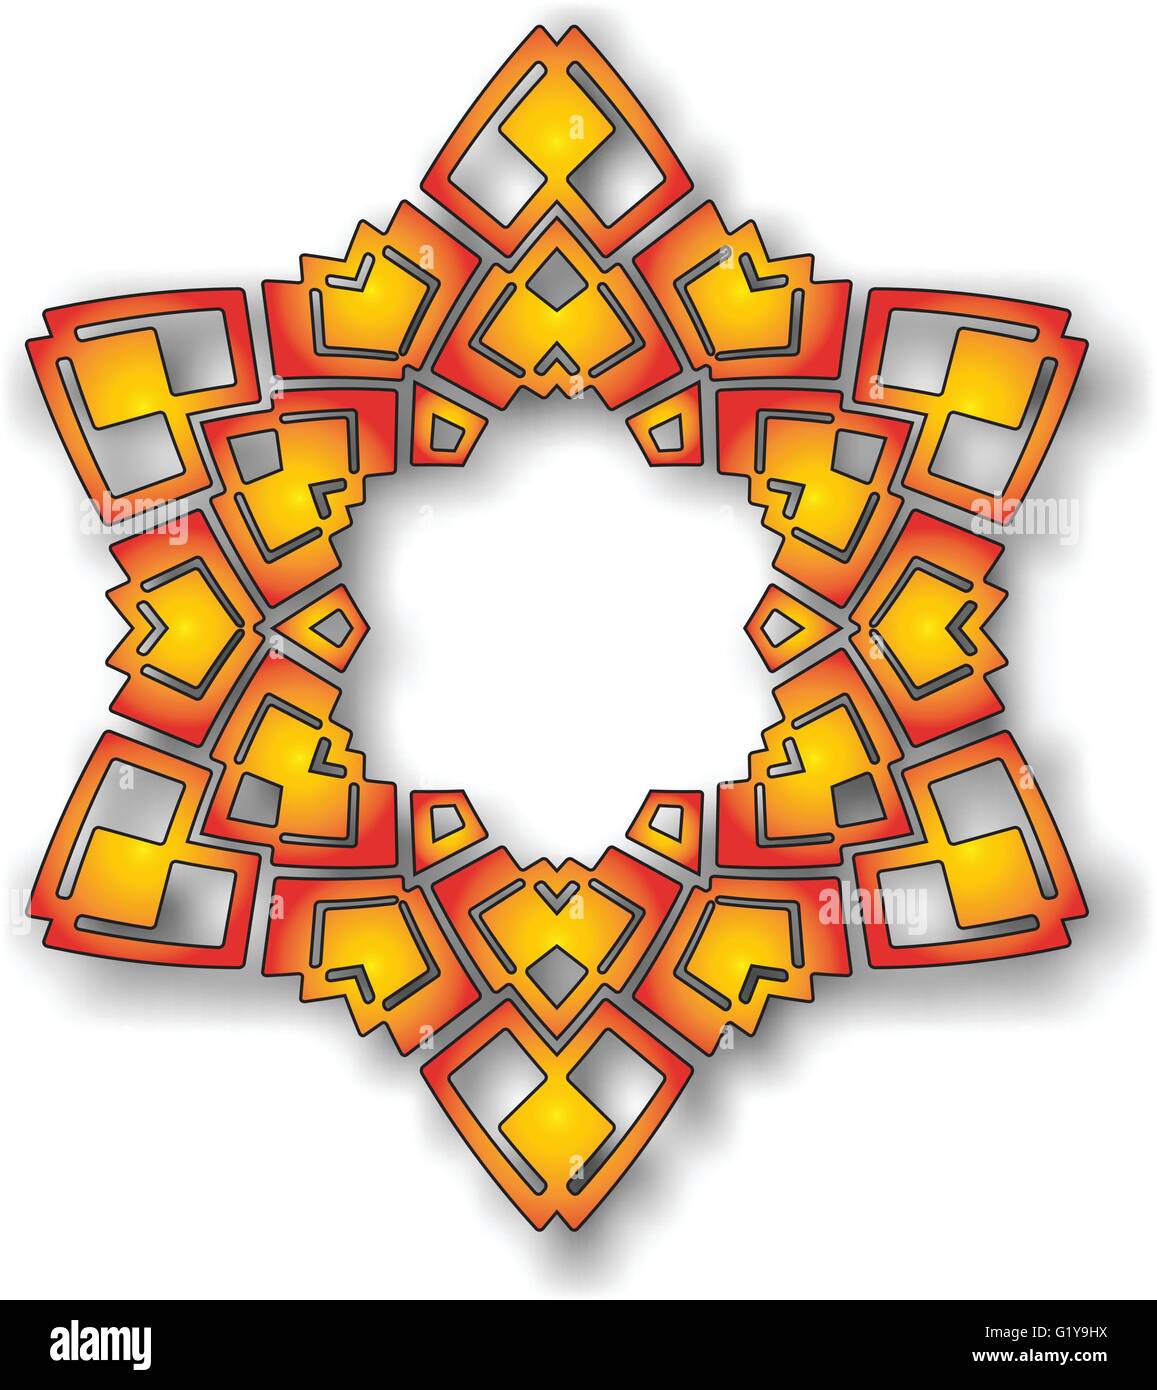 Abstract vector star circulaire pattern design style mandala. Motif rond Mandala. Résumé de la conception islamique Persan Arabe Turc d'ornement floral cercle vecteur border Illustration de Vecteur